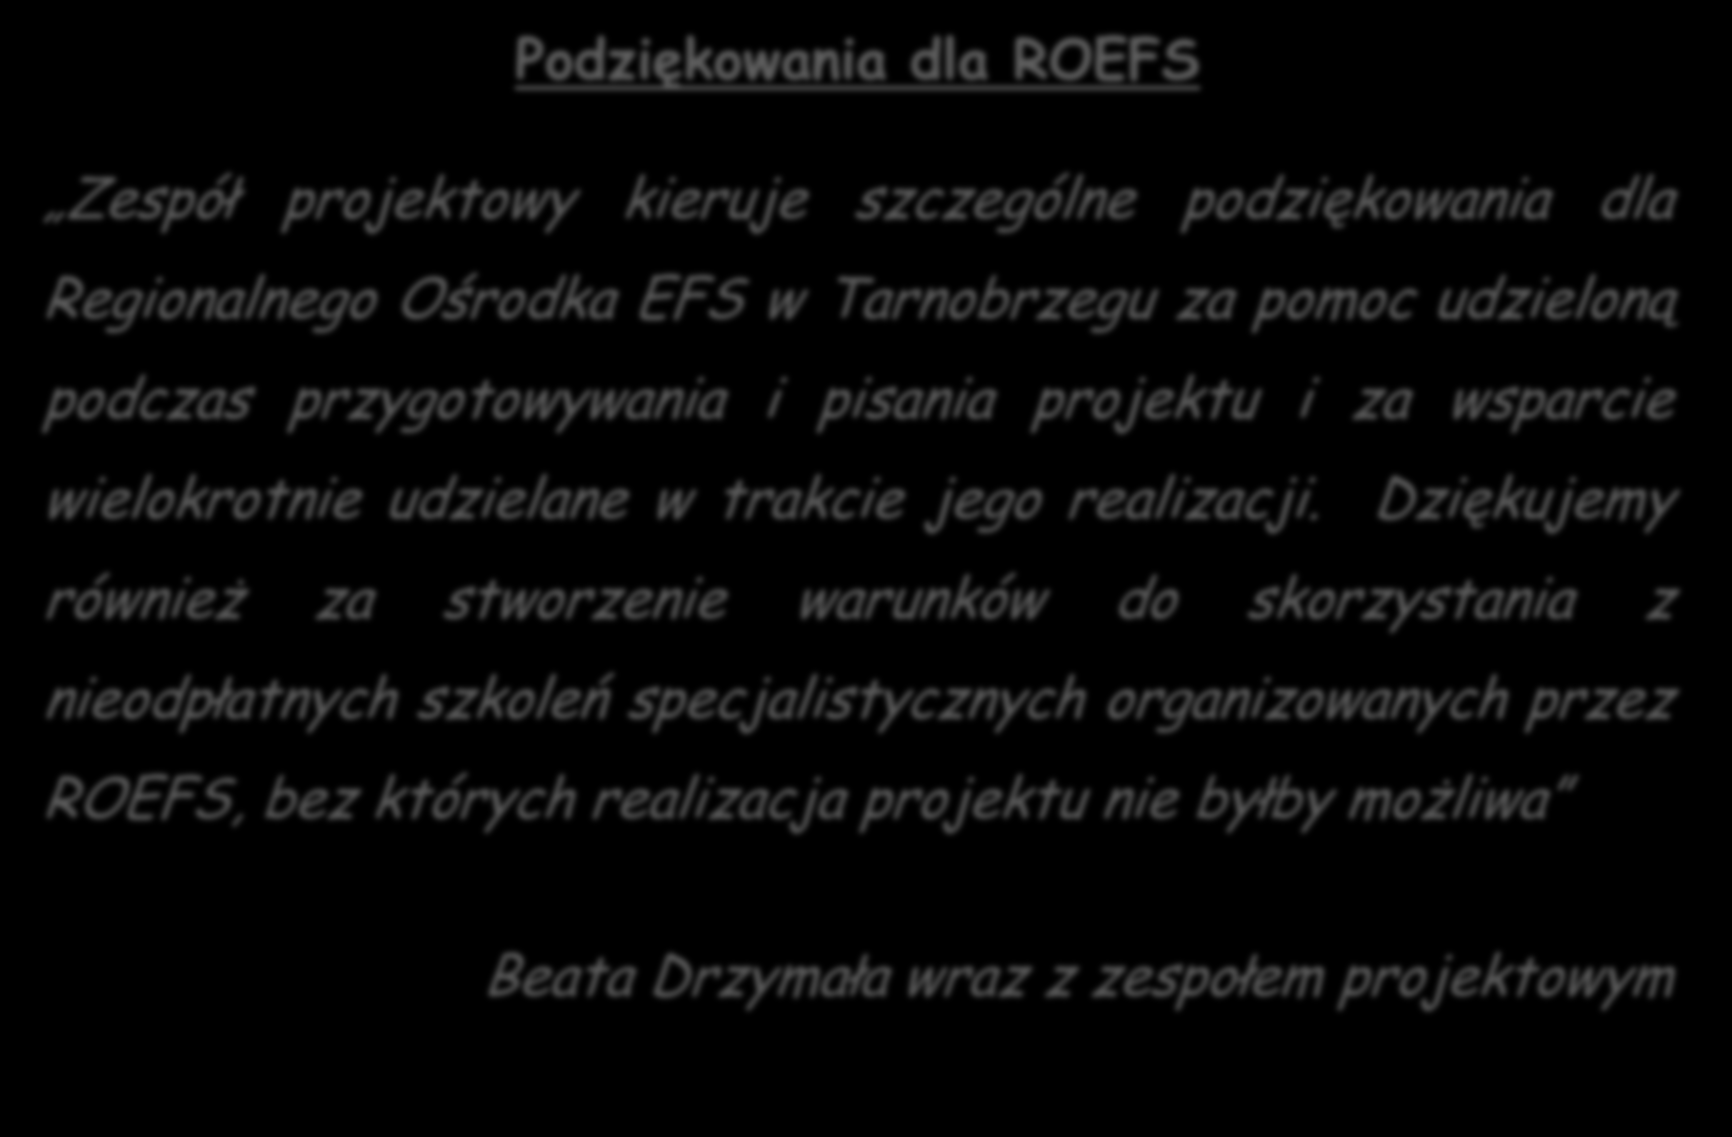 Przykłady współpracy Podziękowania dla ROEFS Zespół projektowy kieruje szczególne podziękowania dla Regionalnego Ośrodka EFS w Tarnobrzegu za pomoc udzieloną podczas przygotowywania i pisania